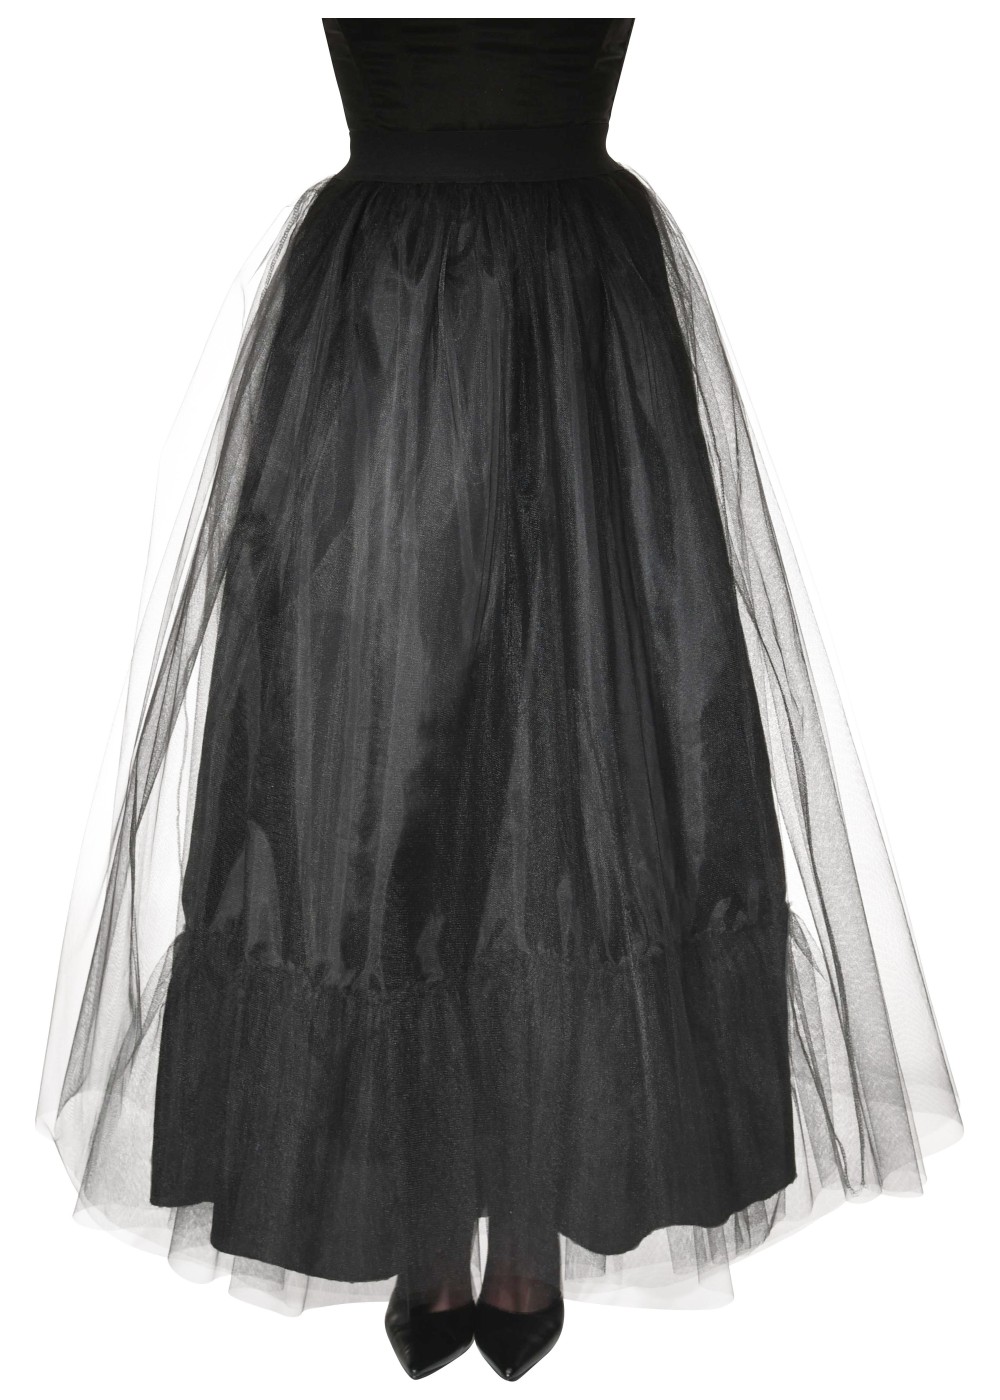 Black Long Women Skirt